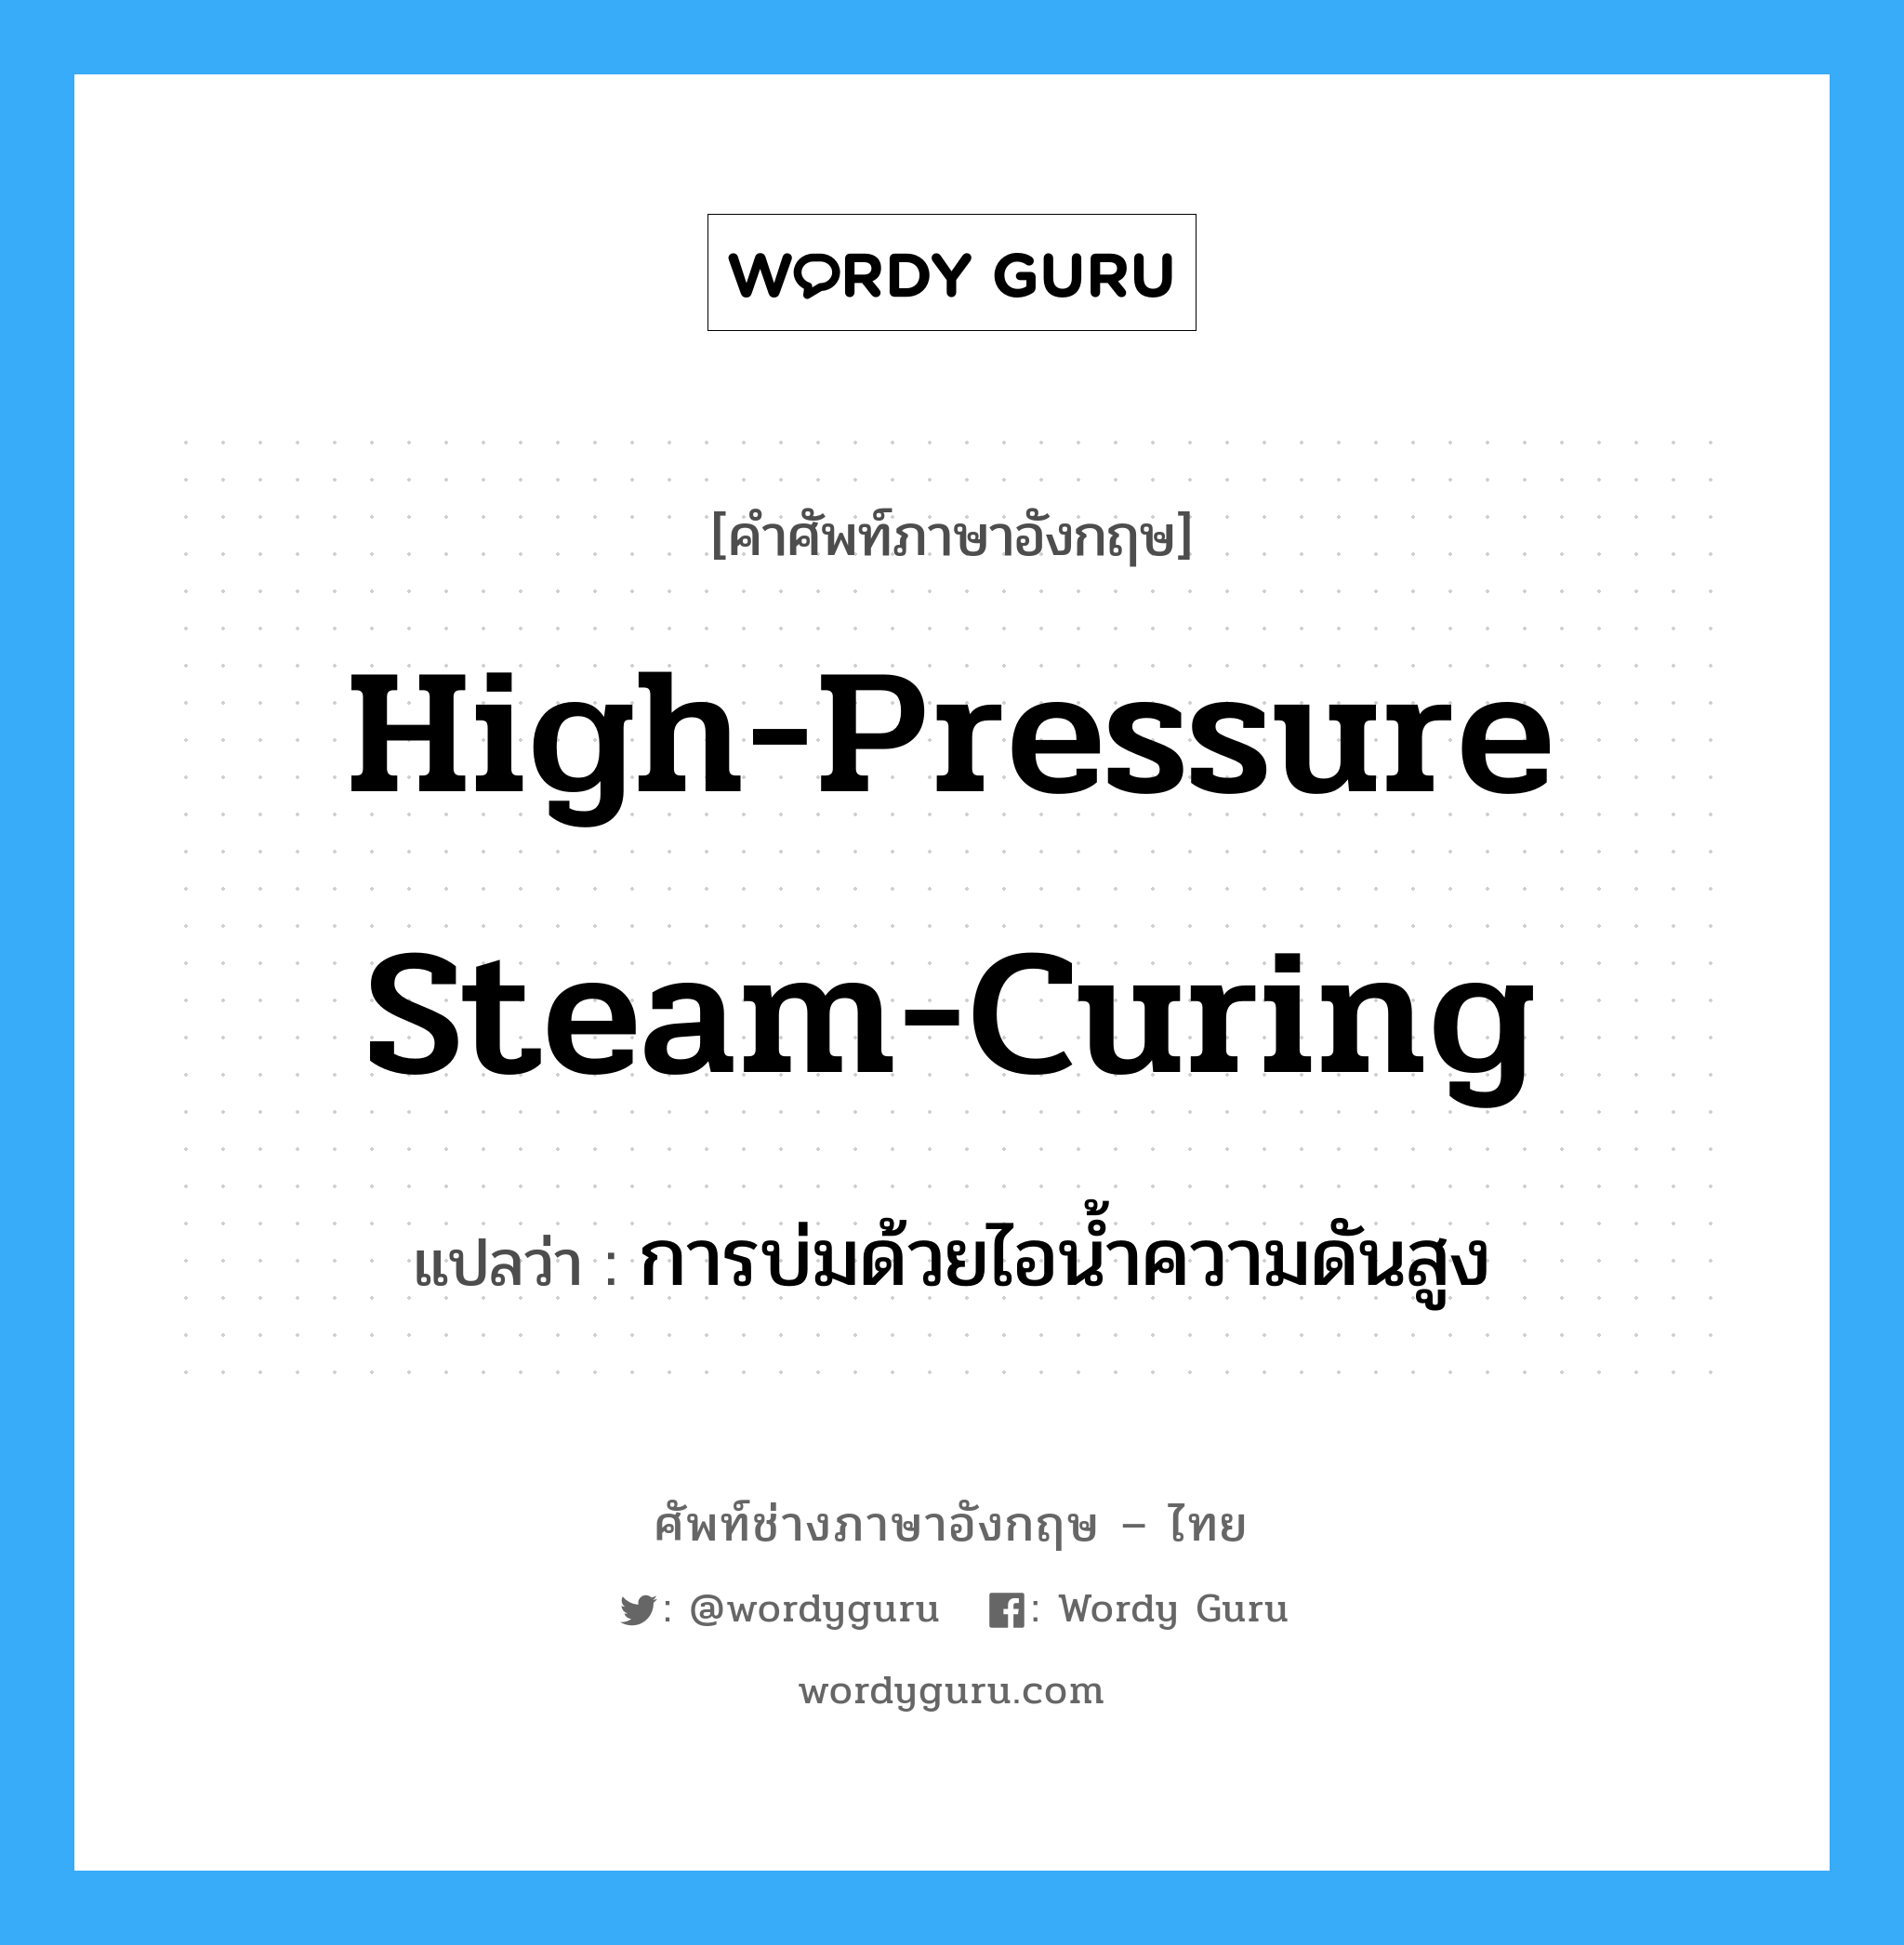 การบ่มด้วยไอน้ำความดันสูง ภาษาอังกฤษ?, คำศัพท์ช่างภาษาอังกฤษ - ไทย การบ่มด้วยไอน้ำความดันสูง คำศัพท์ภาษาอังกฤษ การบ่มด้วยไอน้ำความดันสูง แปลว่า high-pressure steam-curing